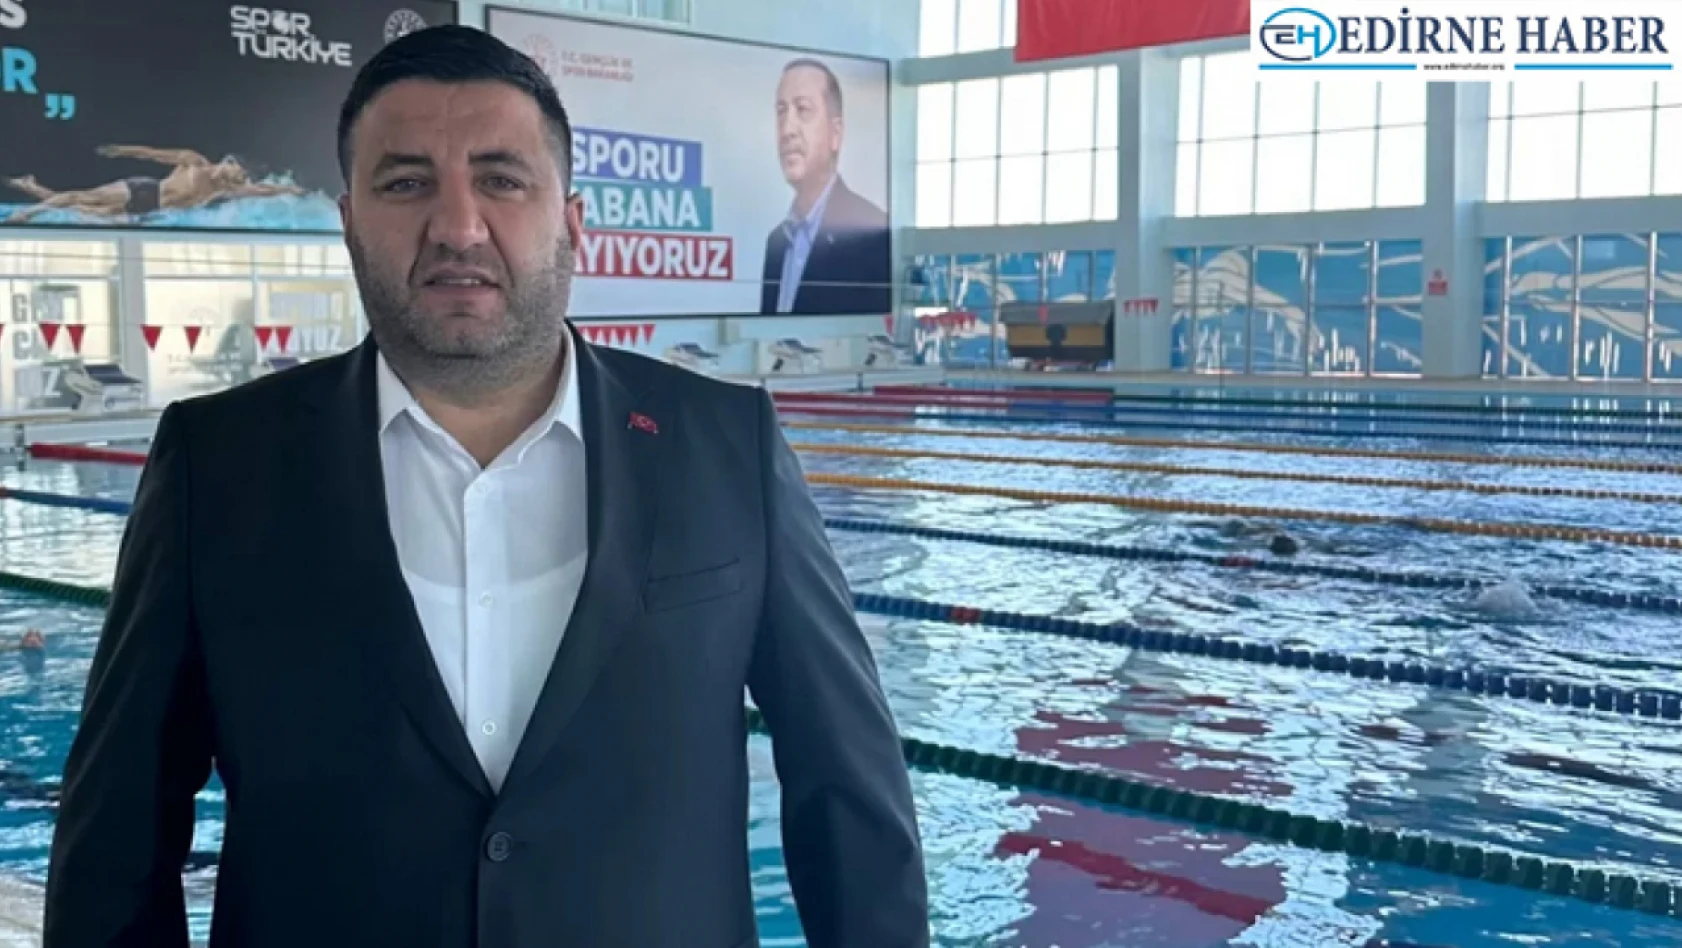 Yüzme milli takım seçmeleri 5-7 Ocak'da Edirne'de yapılacak